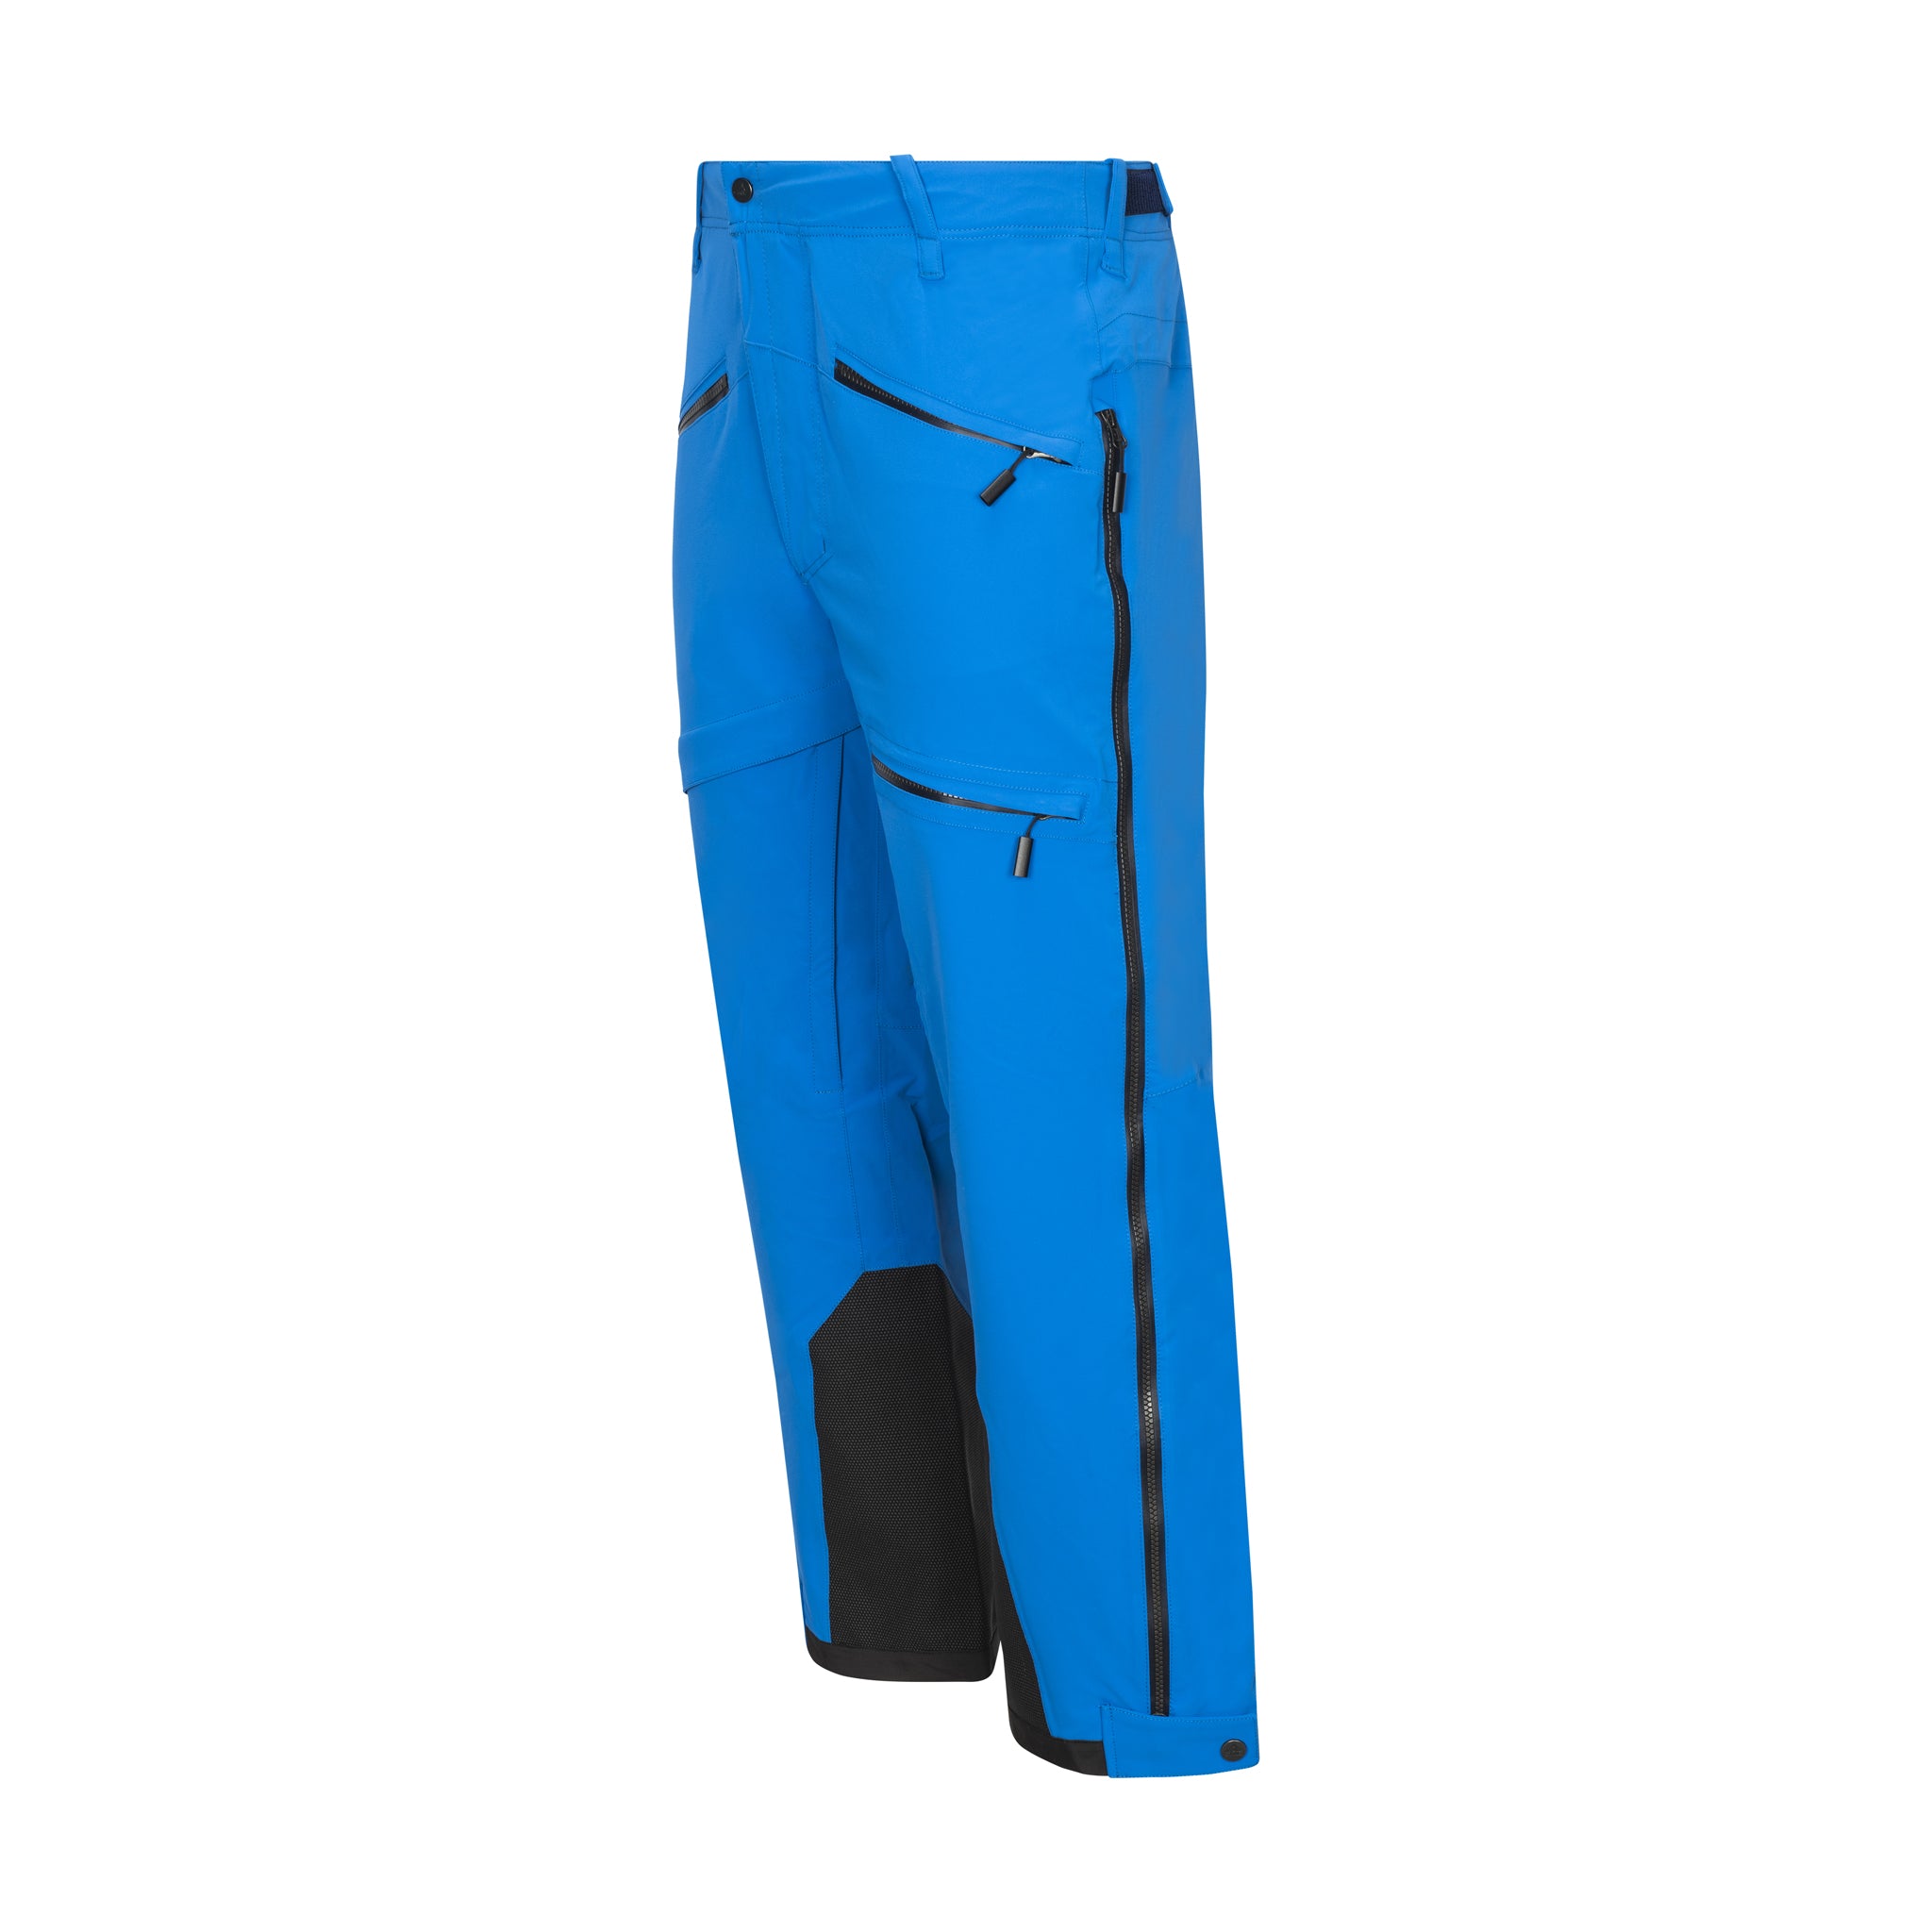 Men's Shelter Ski Pant, Insulated Ski Pant